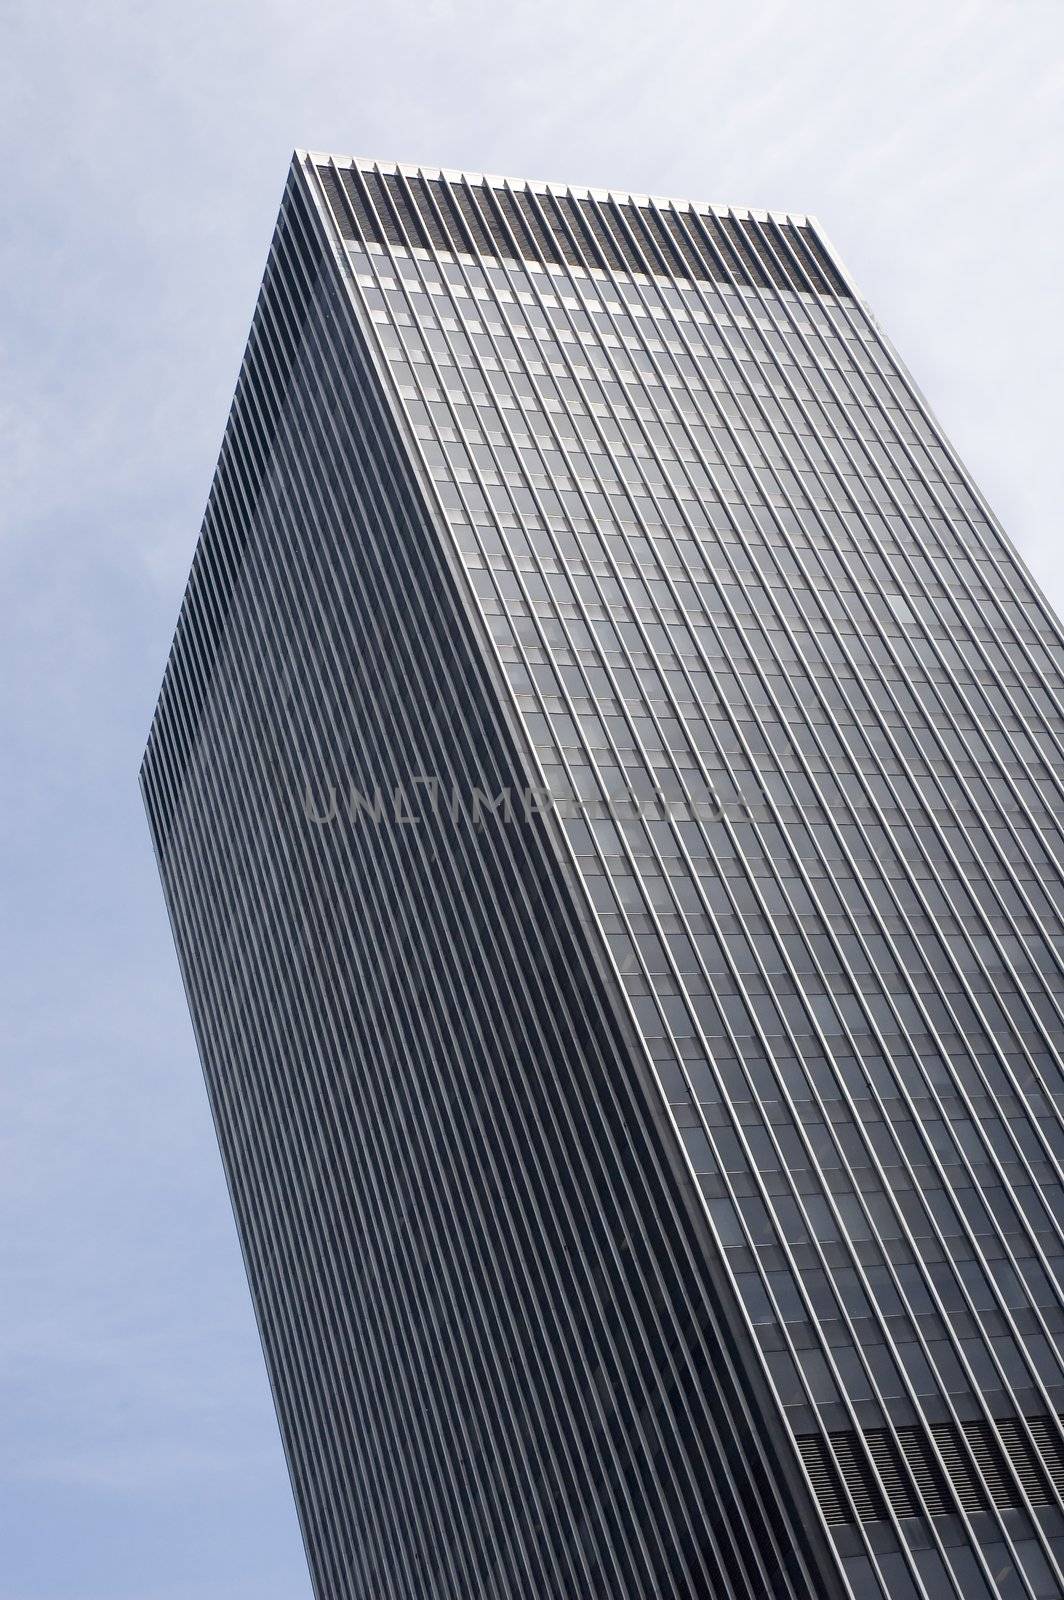 Close up view of a modern skyscraper